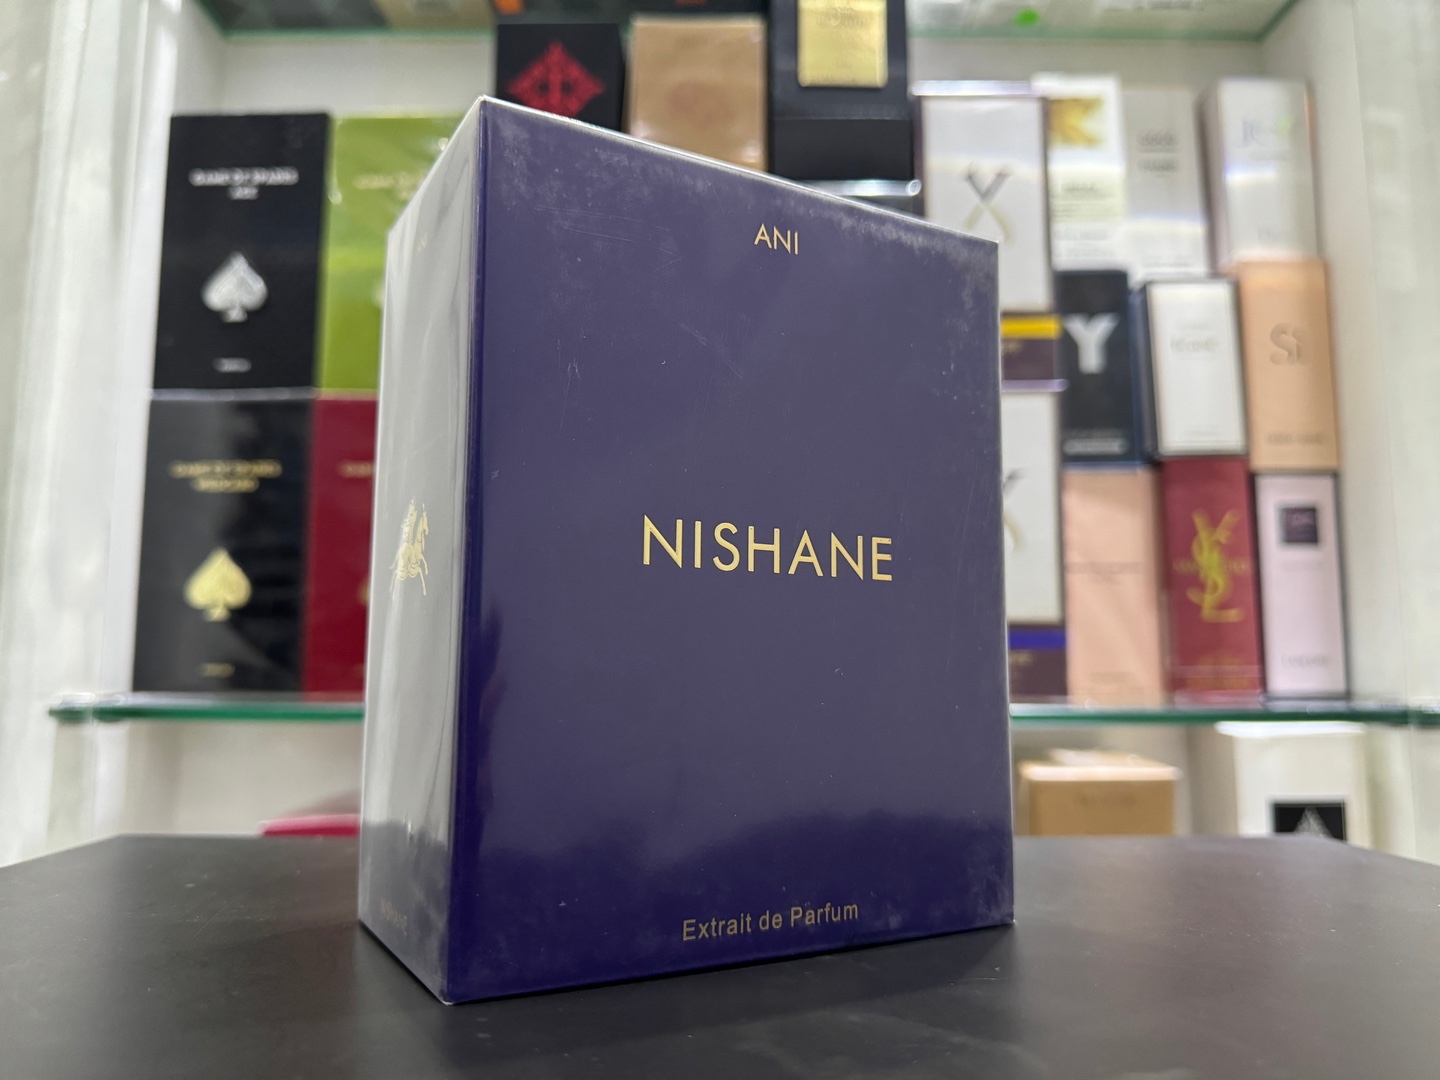 joyas, relojes y accesorios - Perfume NISHANE ANI 100ML Nuevos, 100% Auténticos RD$ 11,500 NEG /SOMOS TIENDA